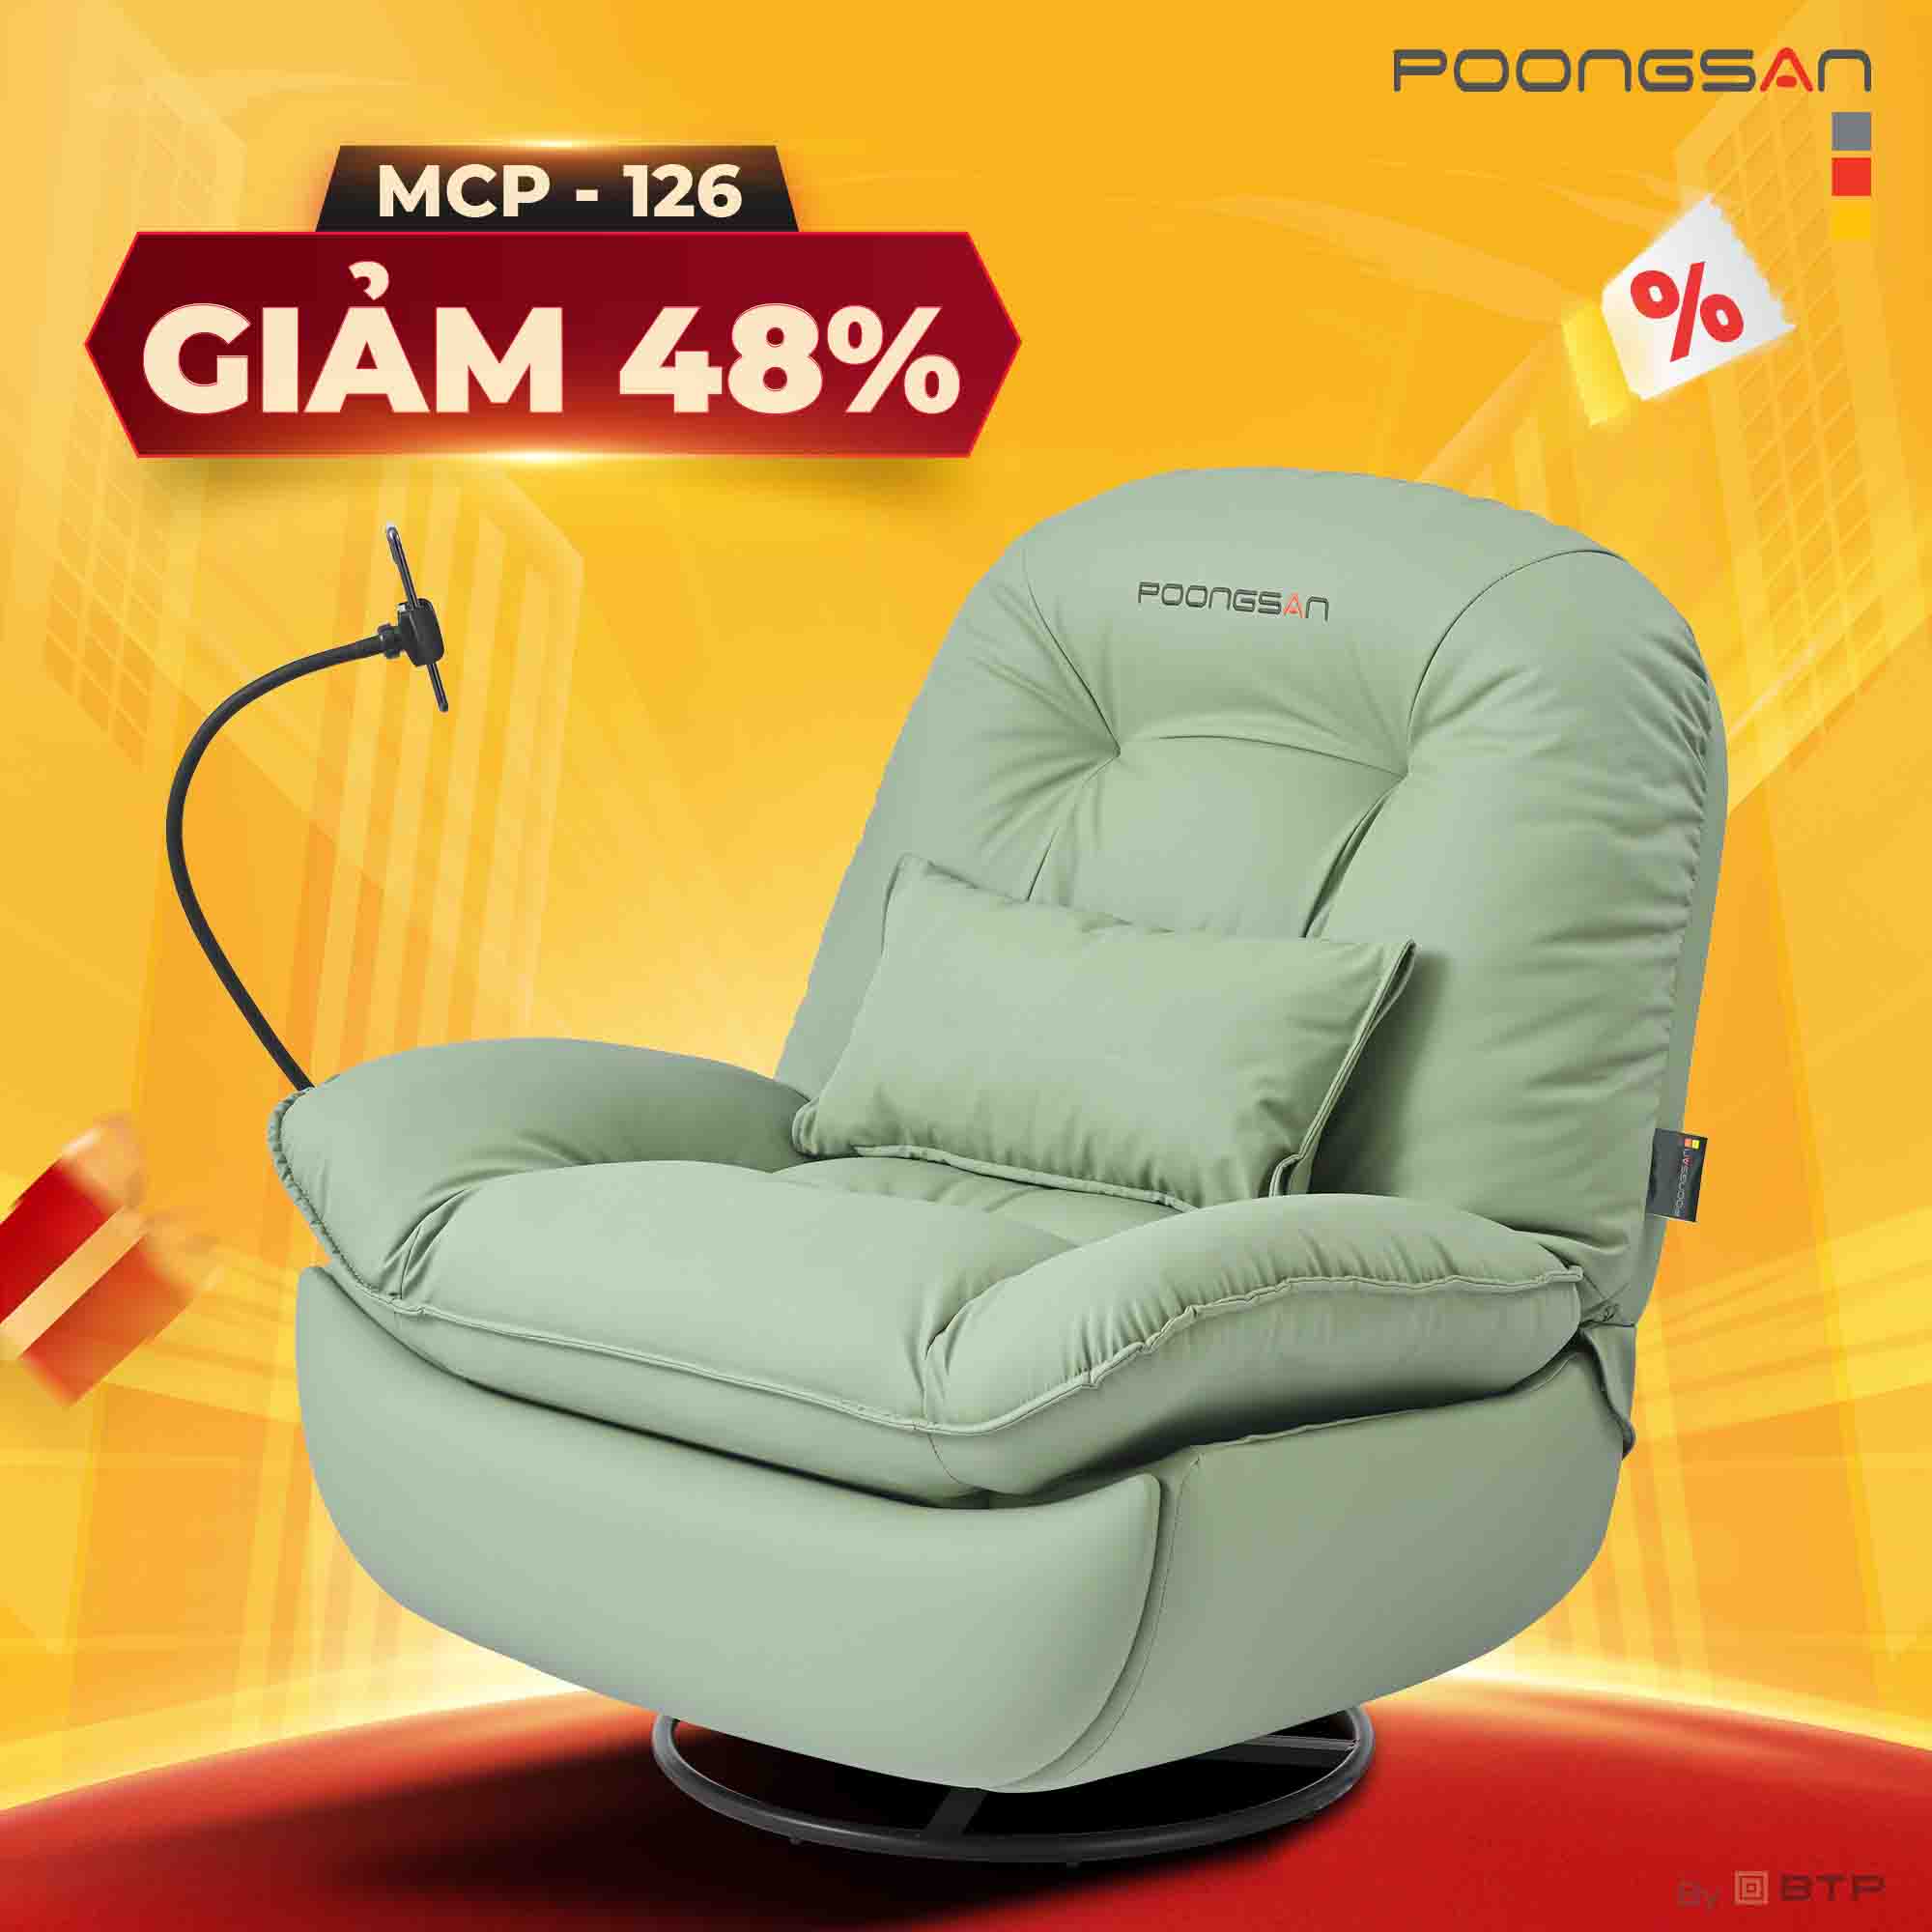 MCP-126 là mẫu ghế 2 in 1 kết hợp giữa ghế massage và sofa